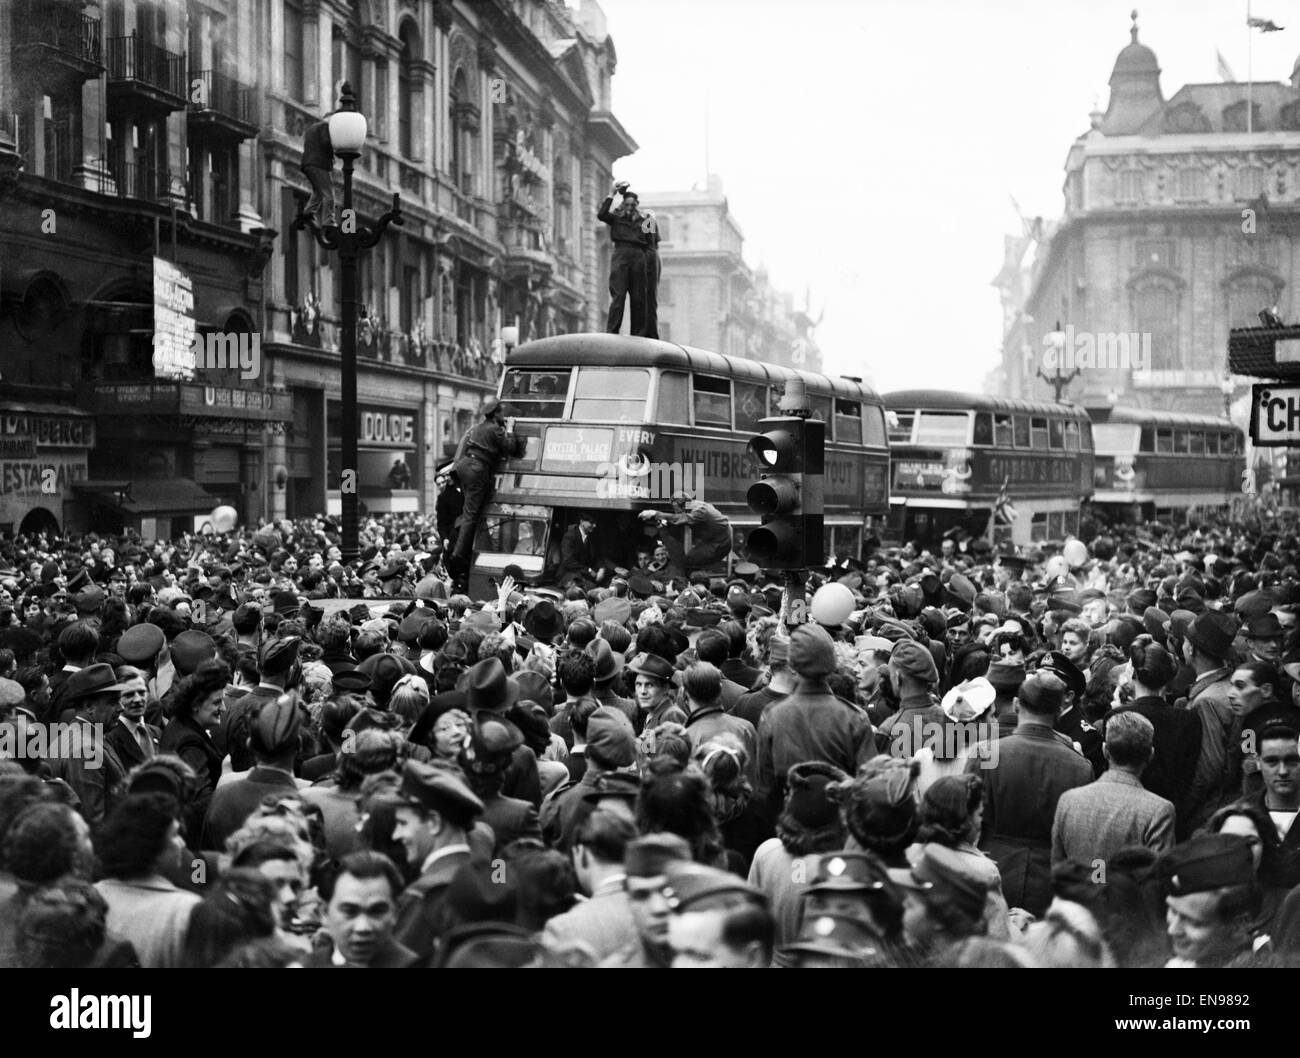 VE Day Feierlichkeiten in London am Ende des zweiten Weltkriegs. Riesige Menschenmengen versammelten sich um Piccadilly Circus während der Feierlichkeiten. 8. Mai 1945. Stockfoto